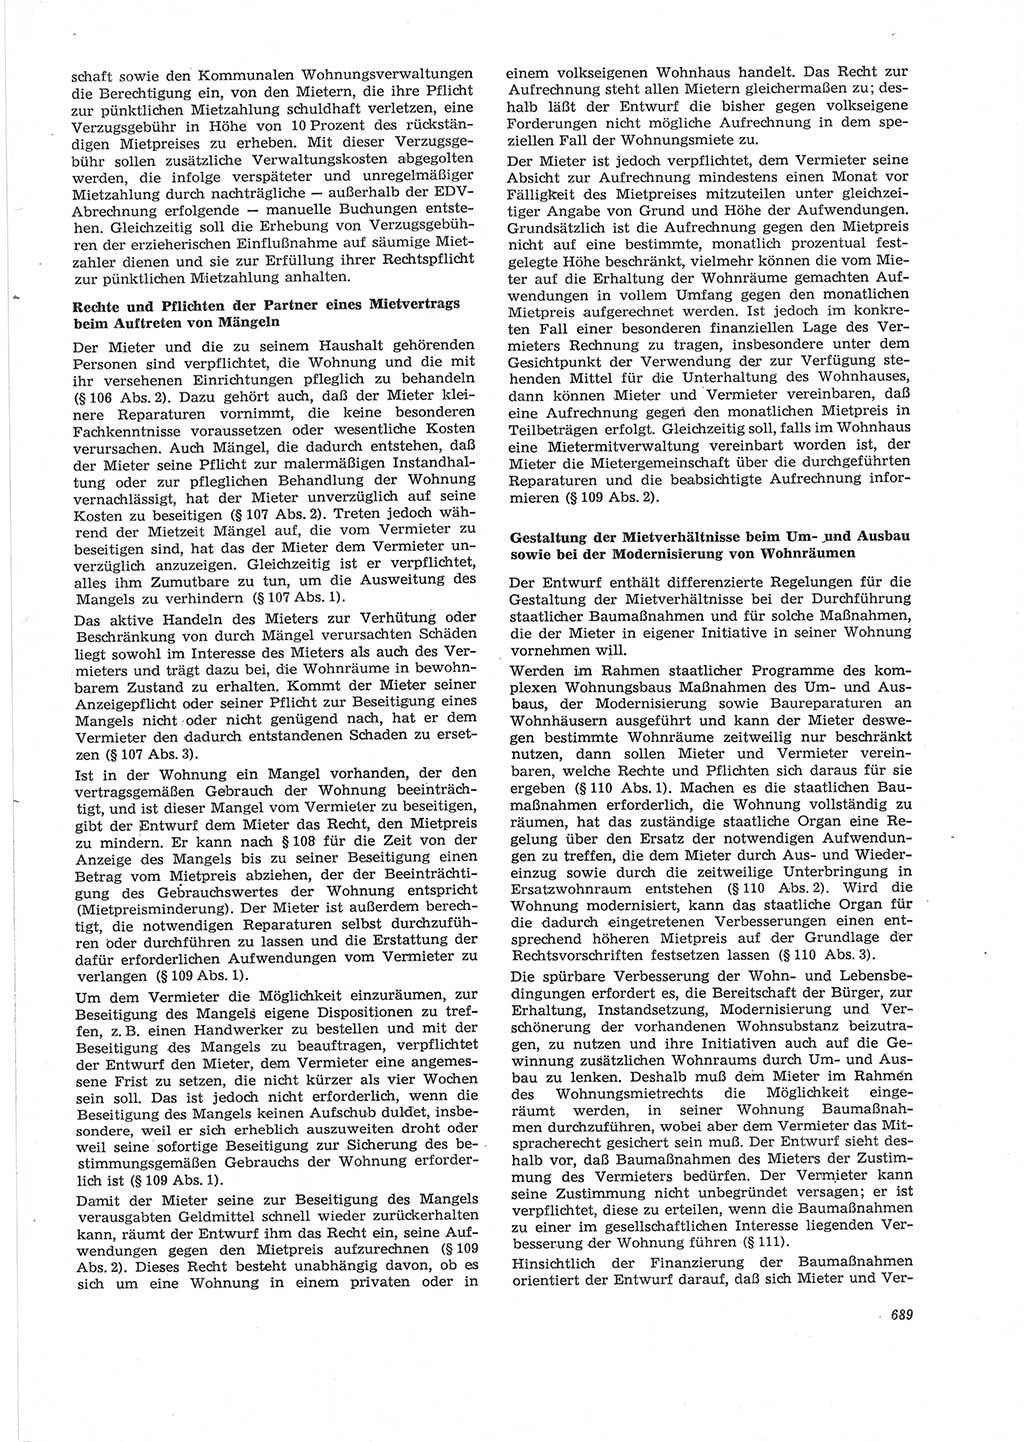 Neue Justiz (NJ), Zeitschrift für Recht und Rechtswissenschaft [Deutsche Demokratische Republik (DDR)], 28. Jahrgang 1974, Seite 689 (NJ DDR 1974, S. 689)